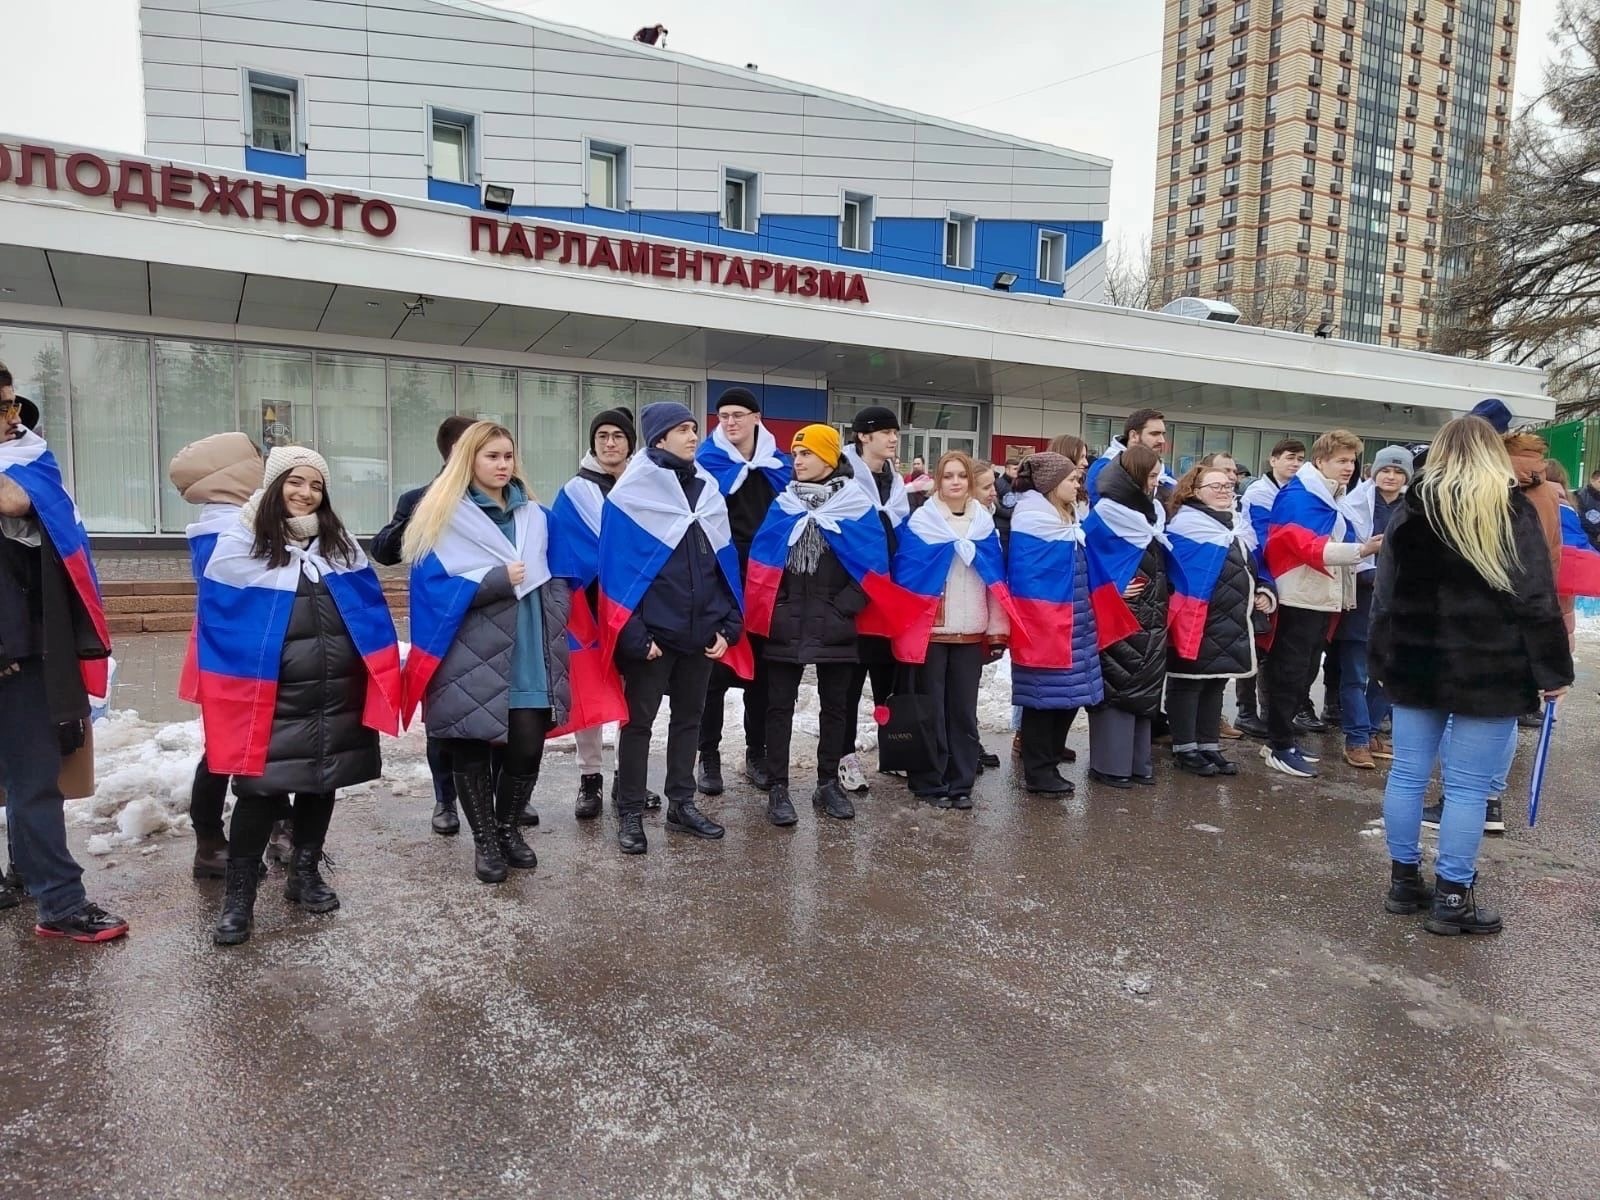 Молодые парламентарии Бирюлева Западного приняли участие в патриотической акции